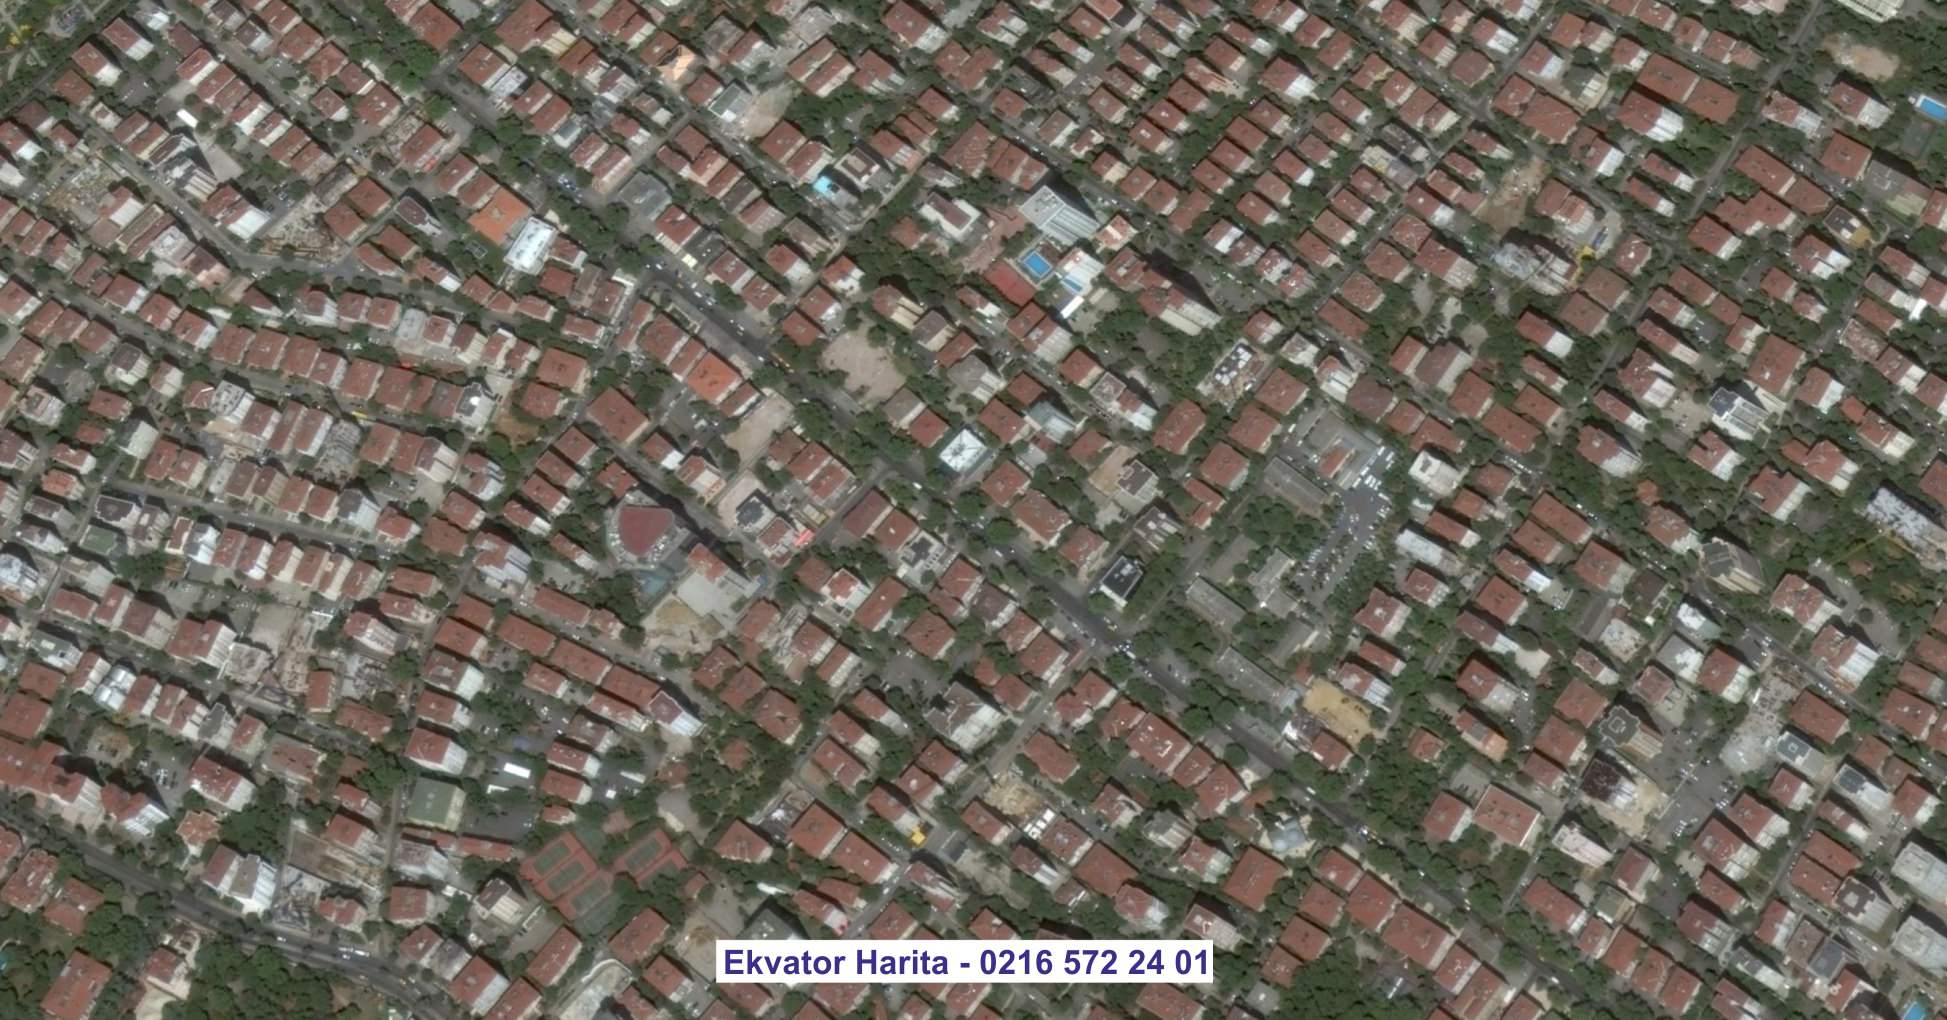 Marmaris Uydu Görüntüsü Örnek Fotoğrafı